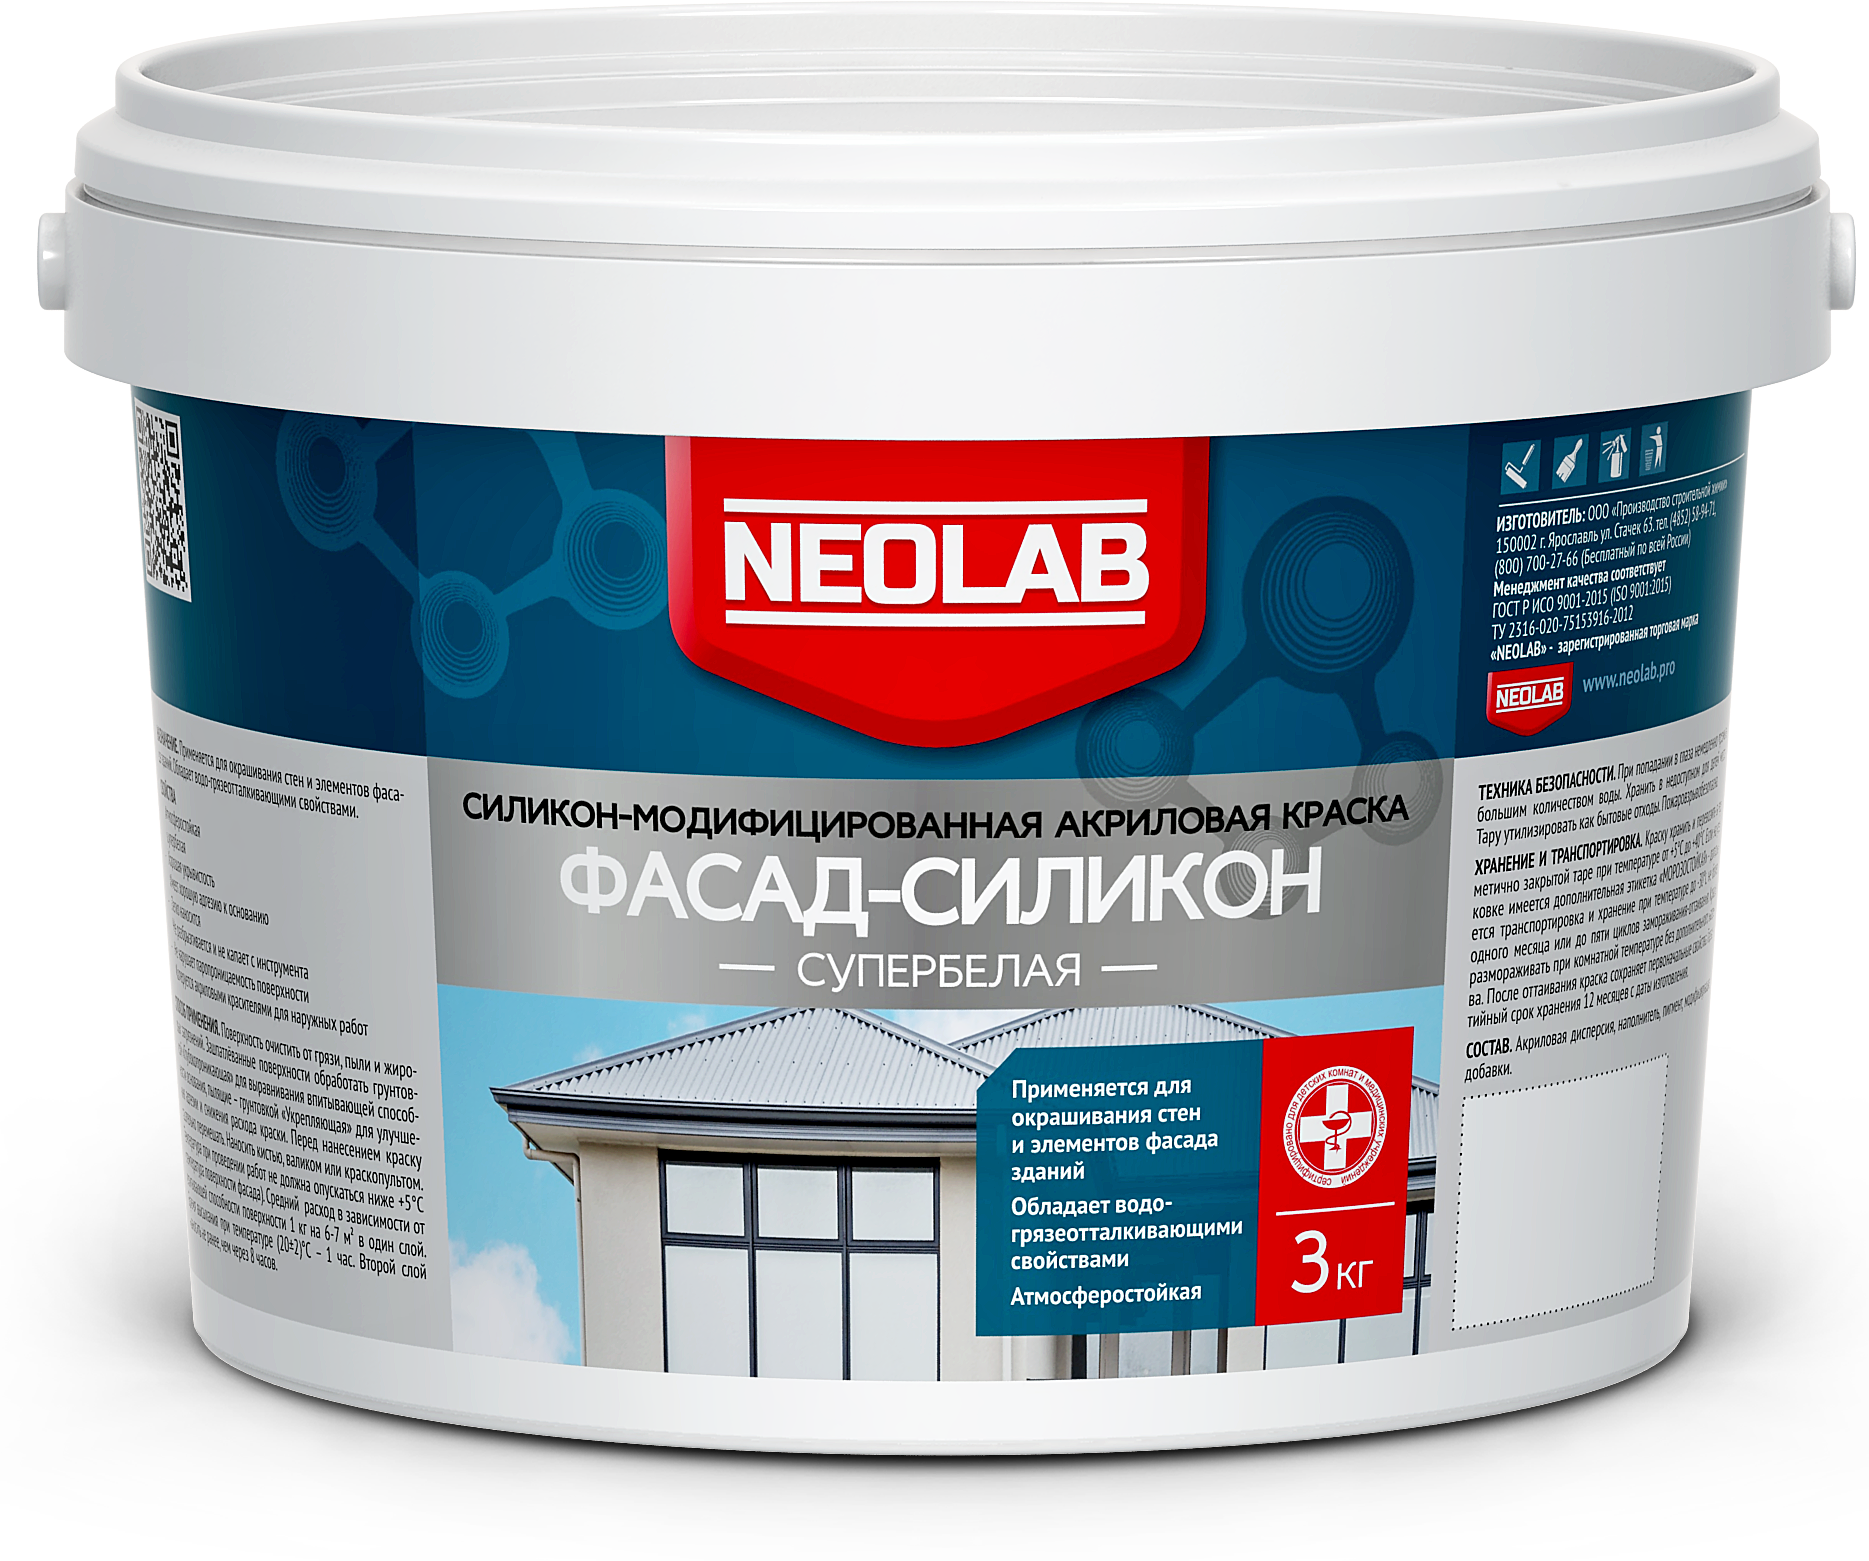 NEOLAB, Краска акриловая силикон-модифицированная фасад-силикон 3 кг